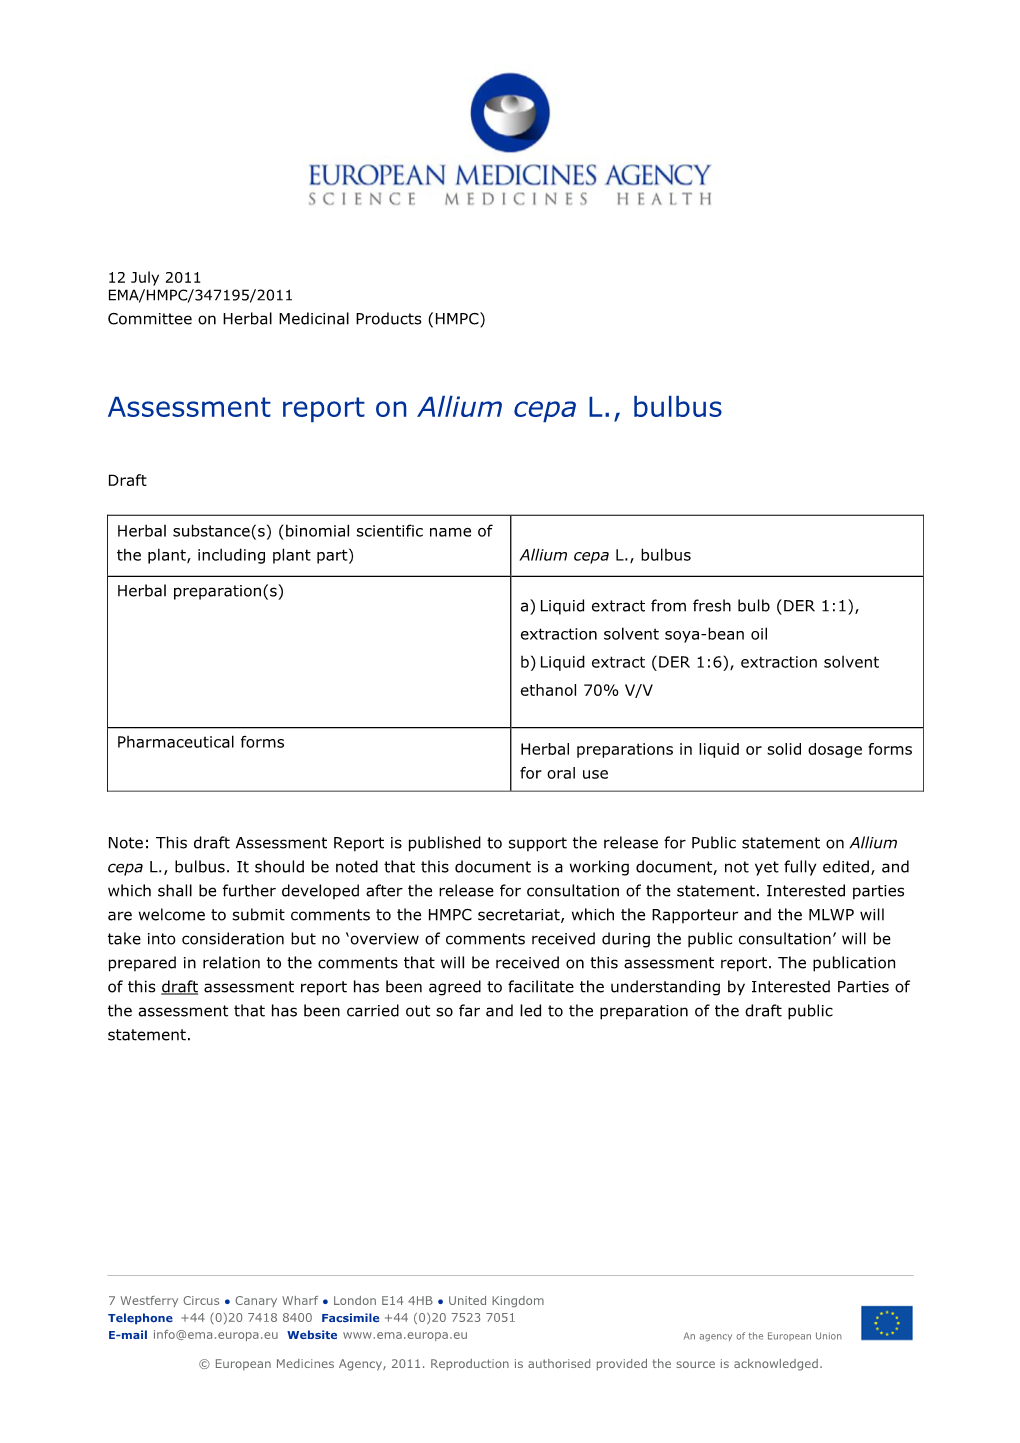 Assessment Report on Allium Cepa L., Bulbus